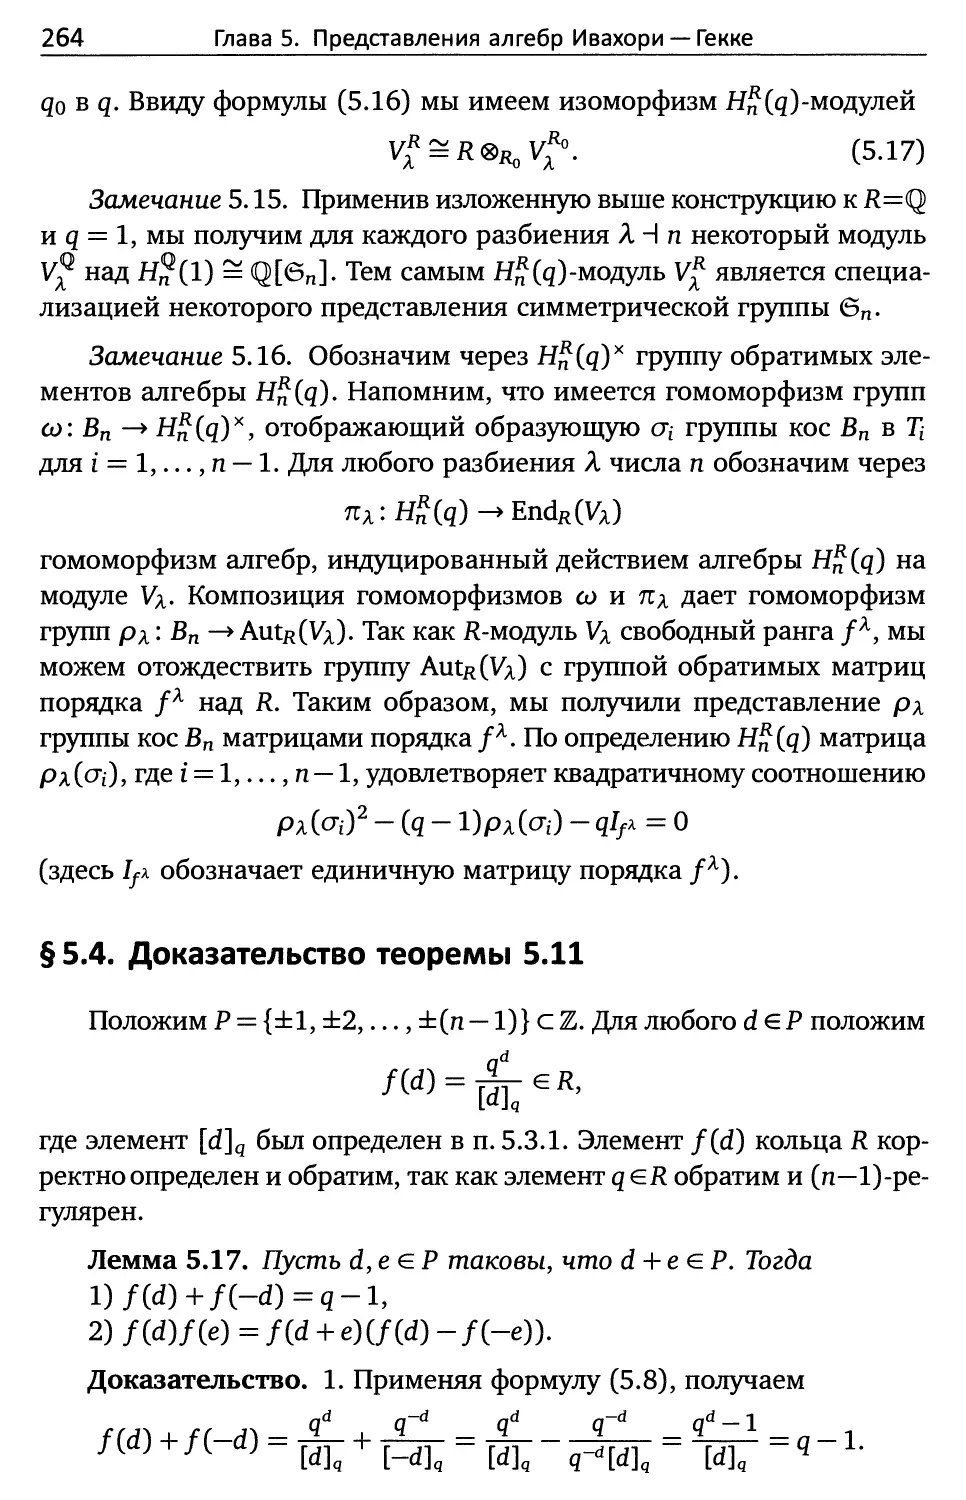 § 5.4. Доказательство теоремы 5.11